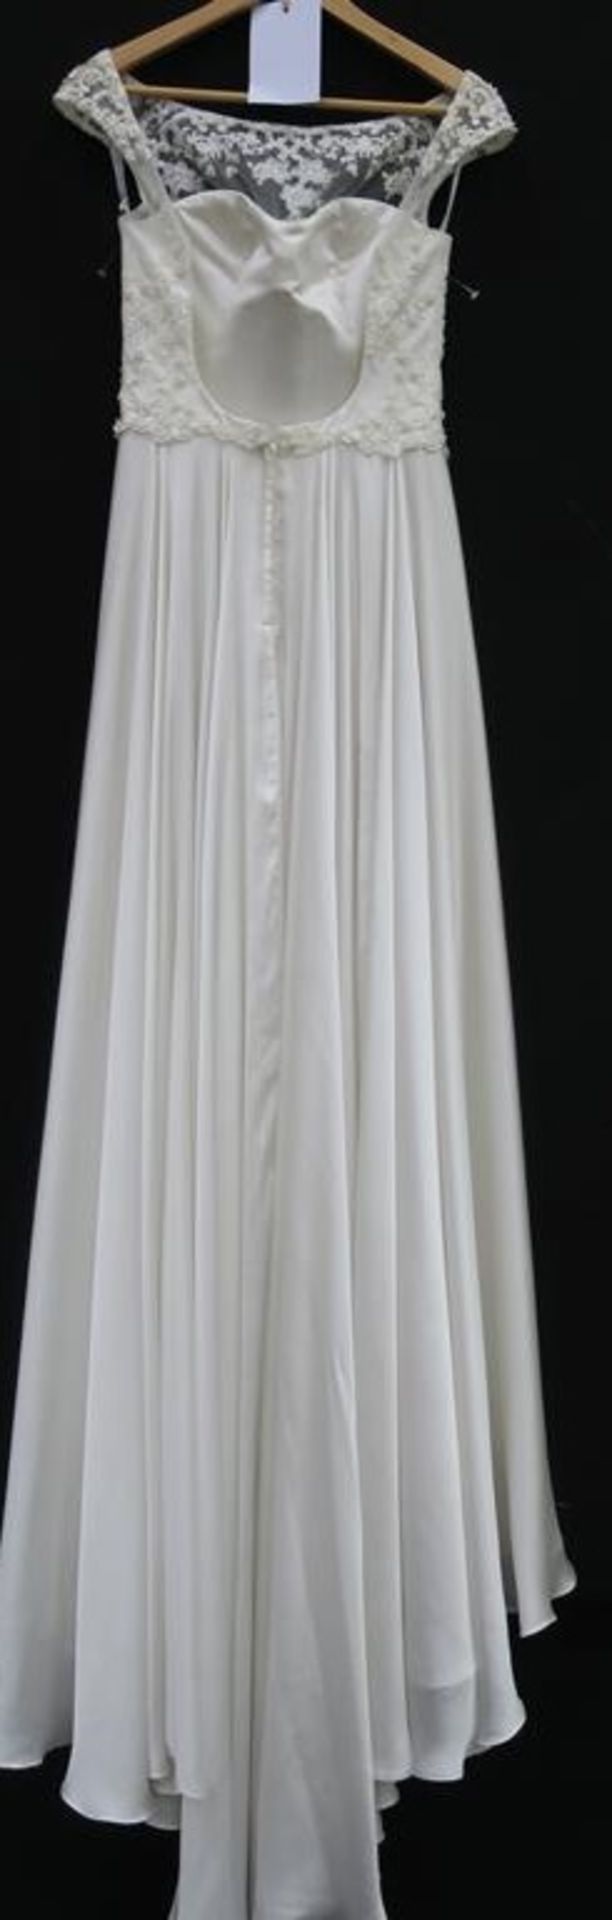 Jack Sullivan Bridal wedding dress - Image 5 of 8